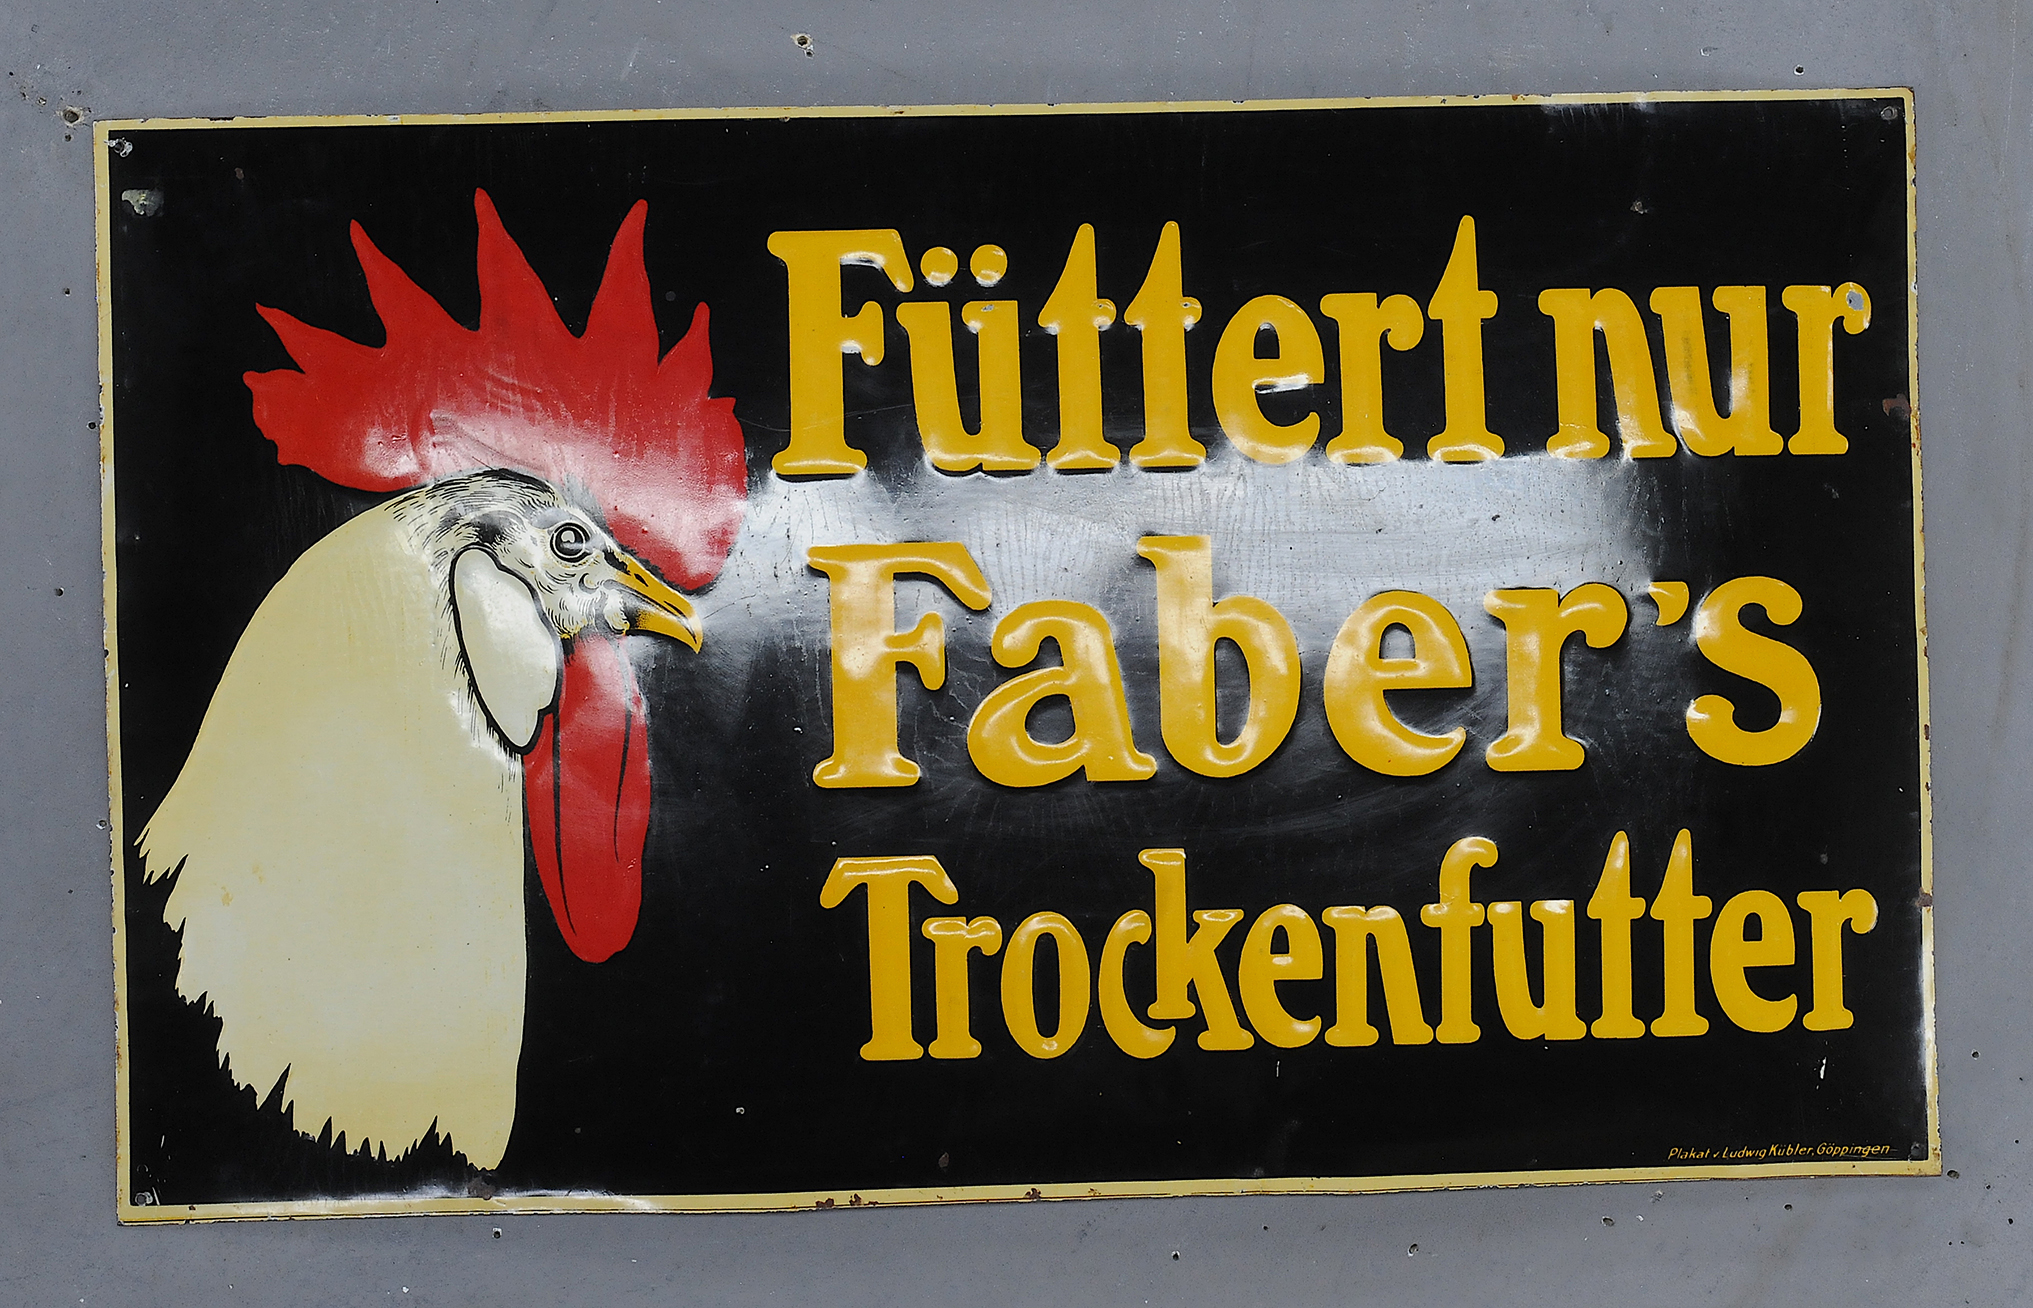 Faber's Trockenfutter - Image 3 of 3